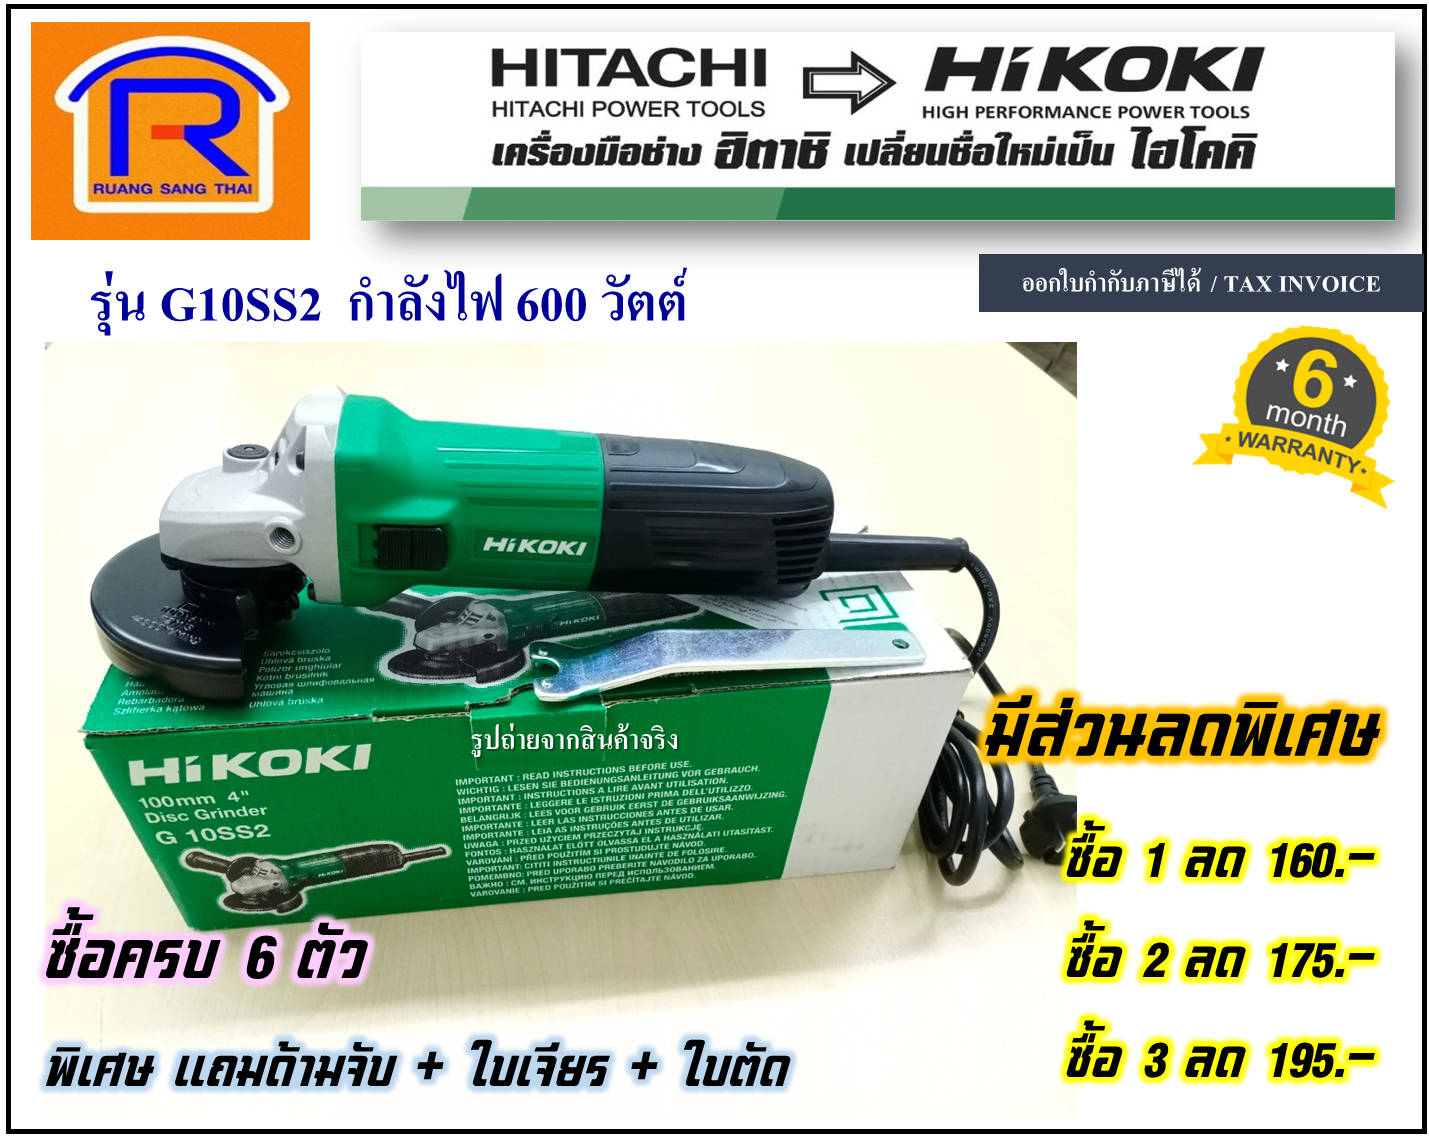 HIKOKI/HITACHI (ไฮโคคิ/ฮิตาชิ)(ส่วนลดสูงสุด 195 บาท) หินเจียร์ เครื่องเจียร เครื่องเจีย หินเจีย (ไม่รวมค่าส่ง)(ลูกหมู) 4 นิ้ว รุ่น G10SS2 (396410226)